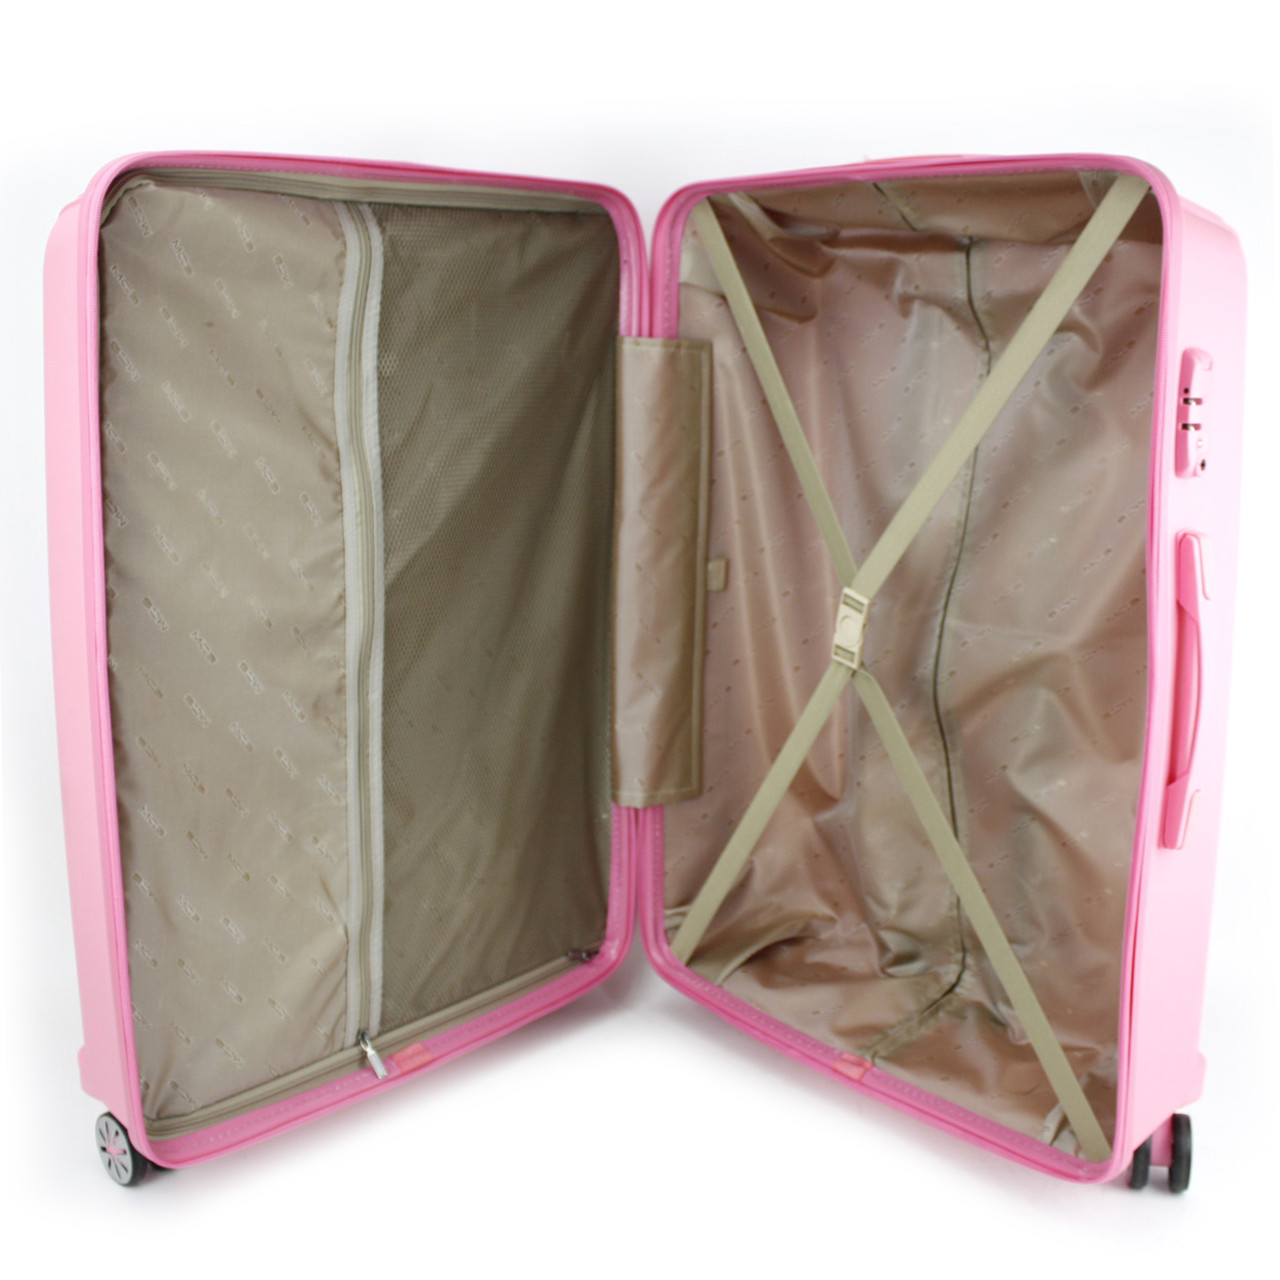 Маленький чемодан для ручьной клади из полипропилена MCS V305 S RED! Для 8-10 кг! - 3